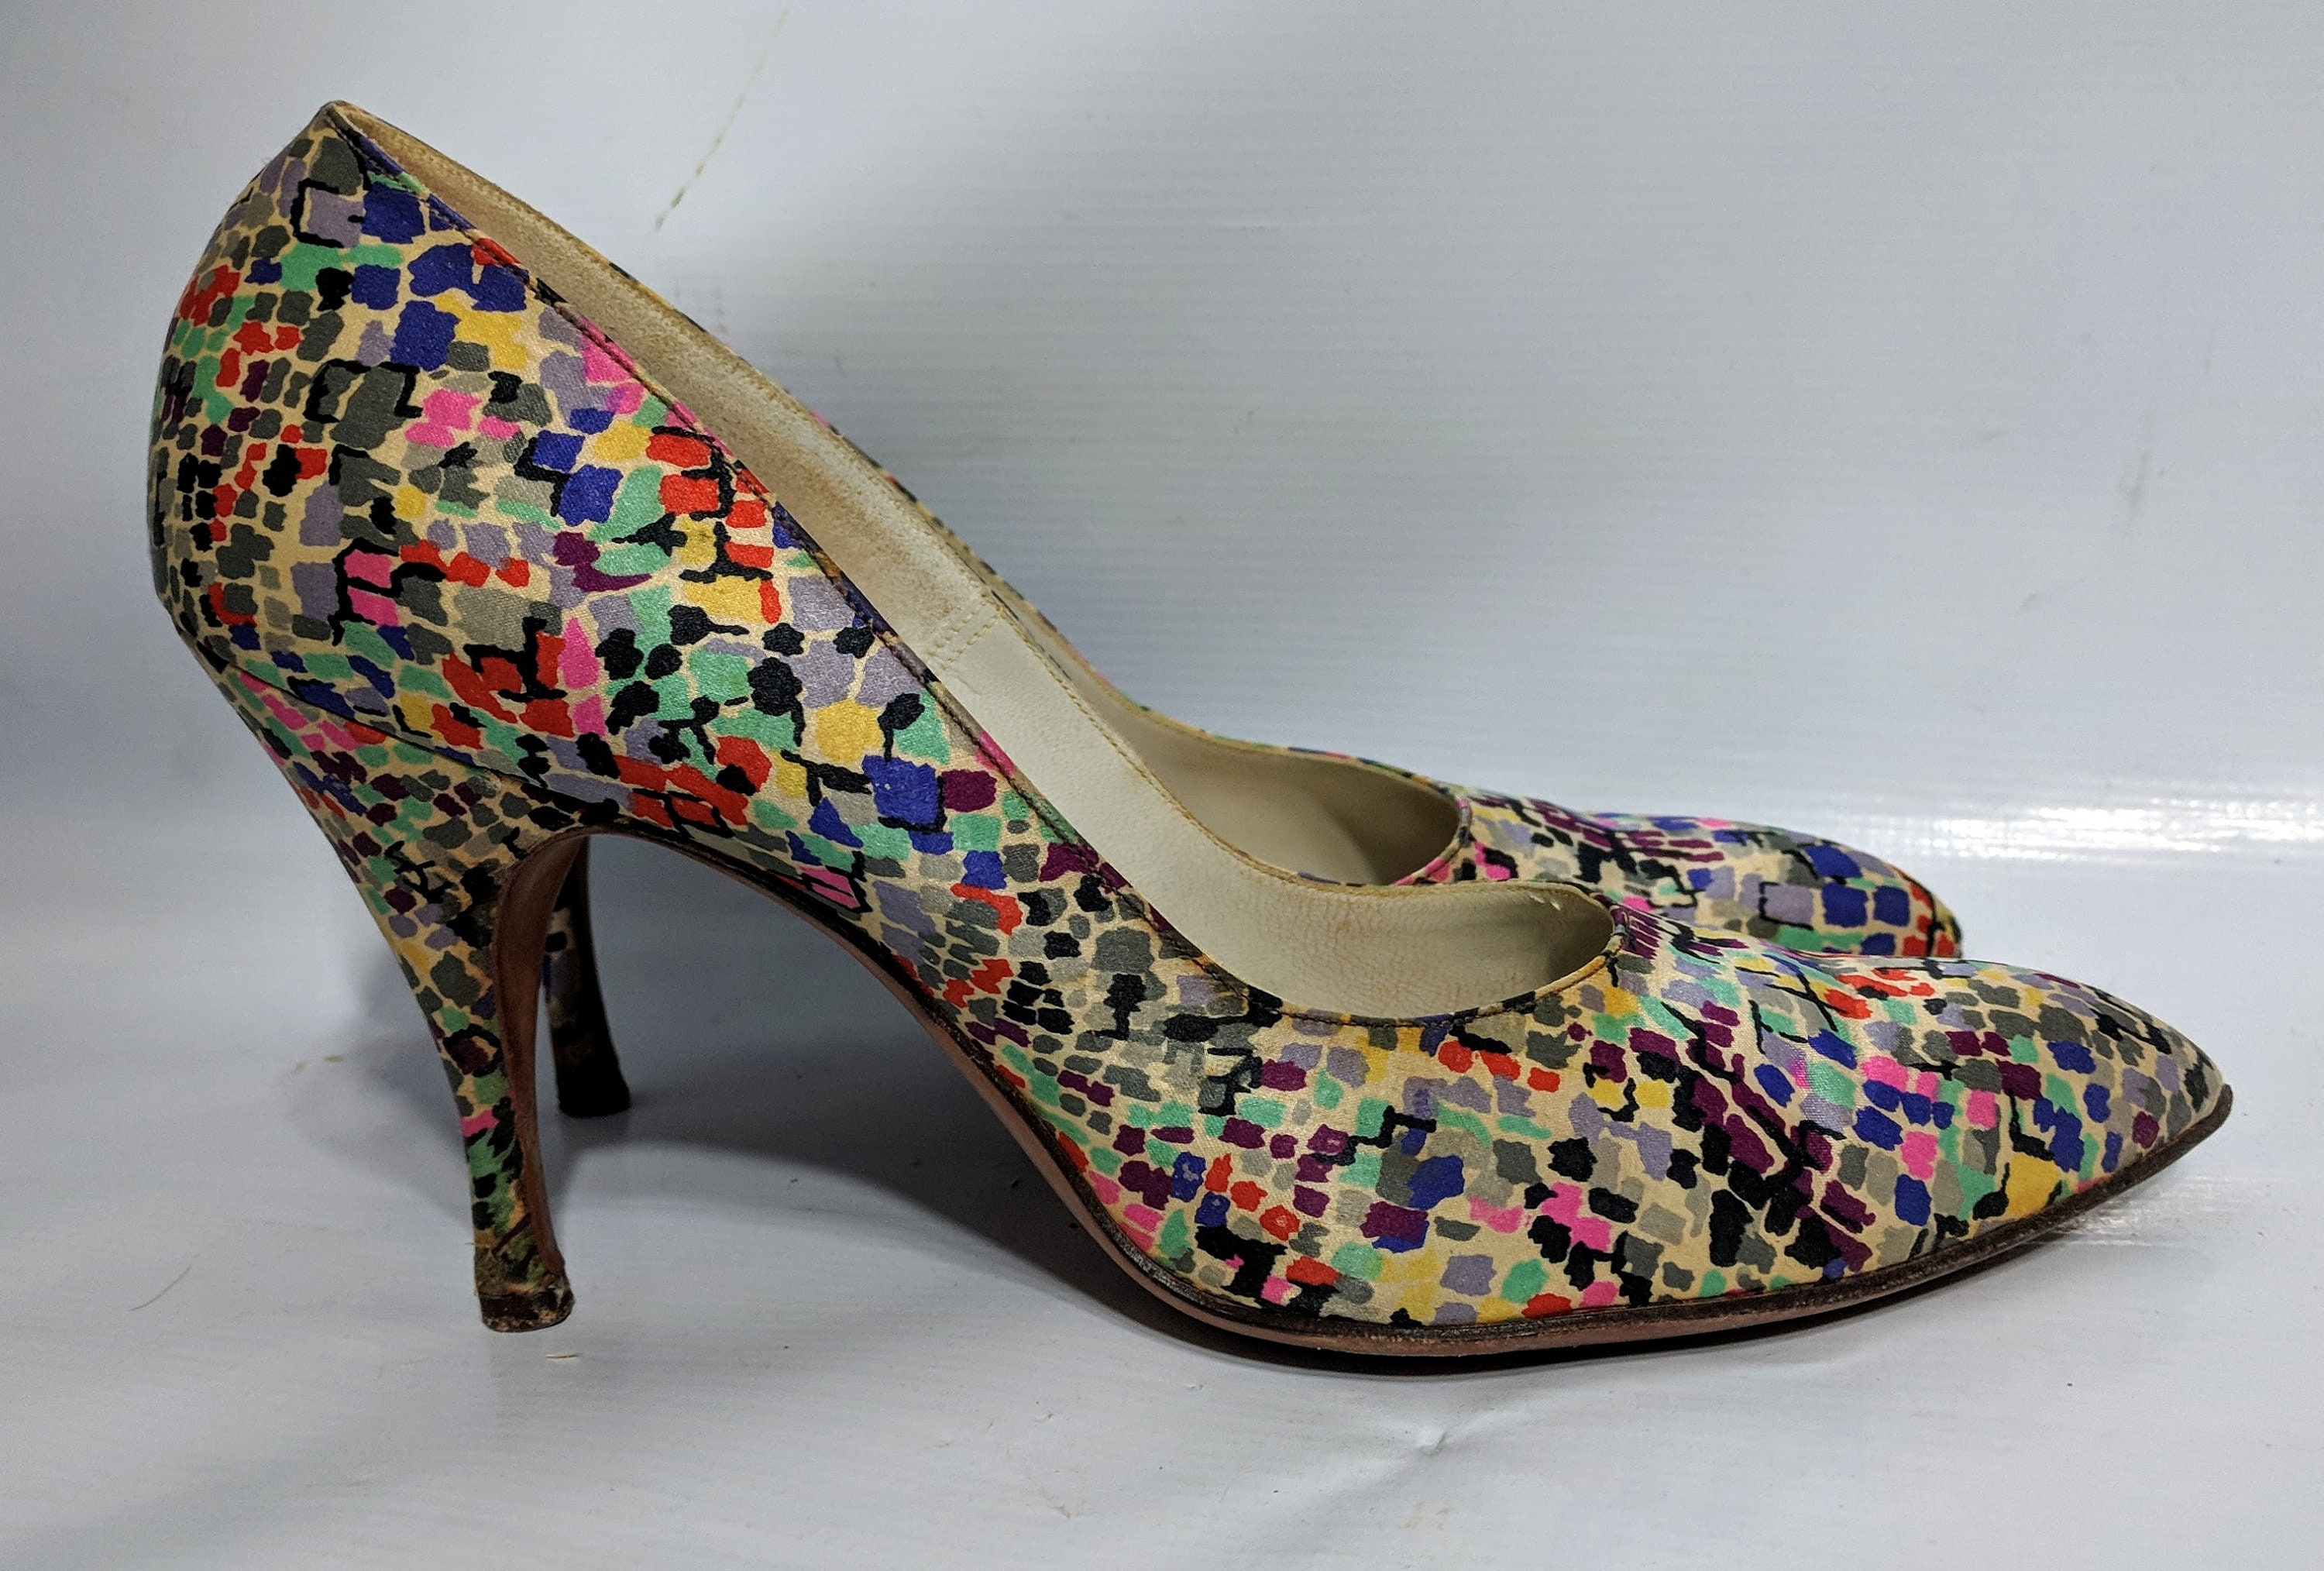 Vintage 60s Mod Multi Color Colorblock Satin Heels Pumps Shoes Op Art ...